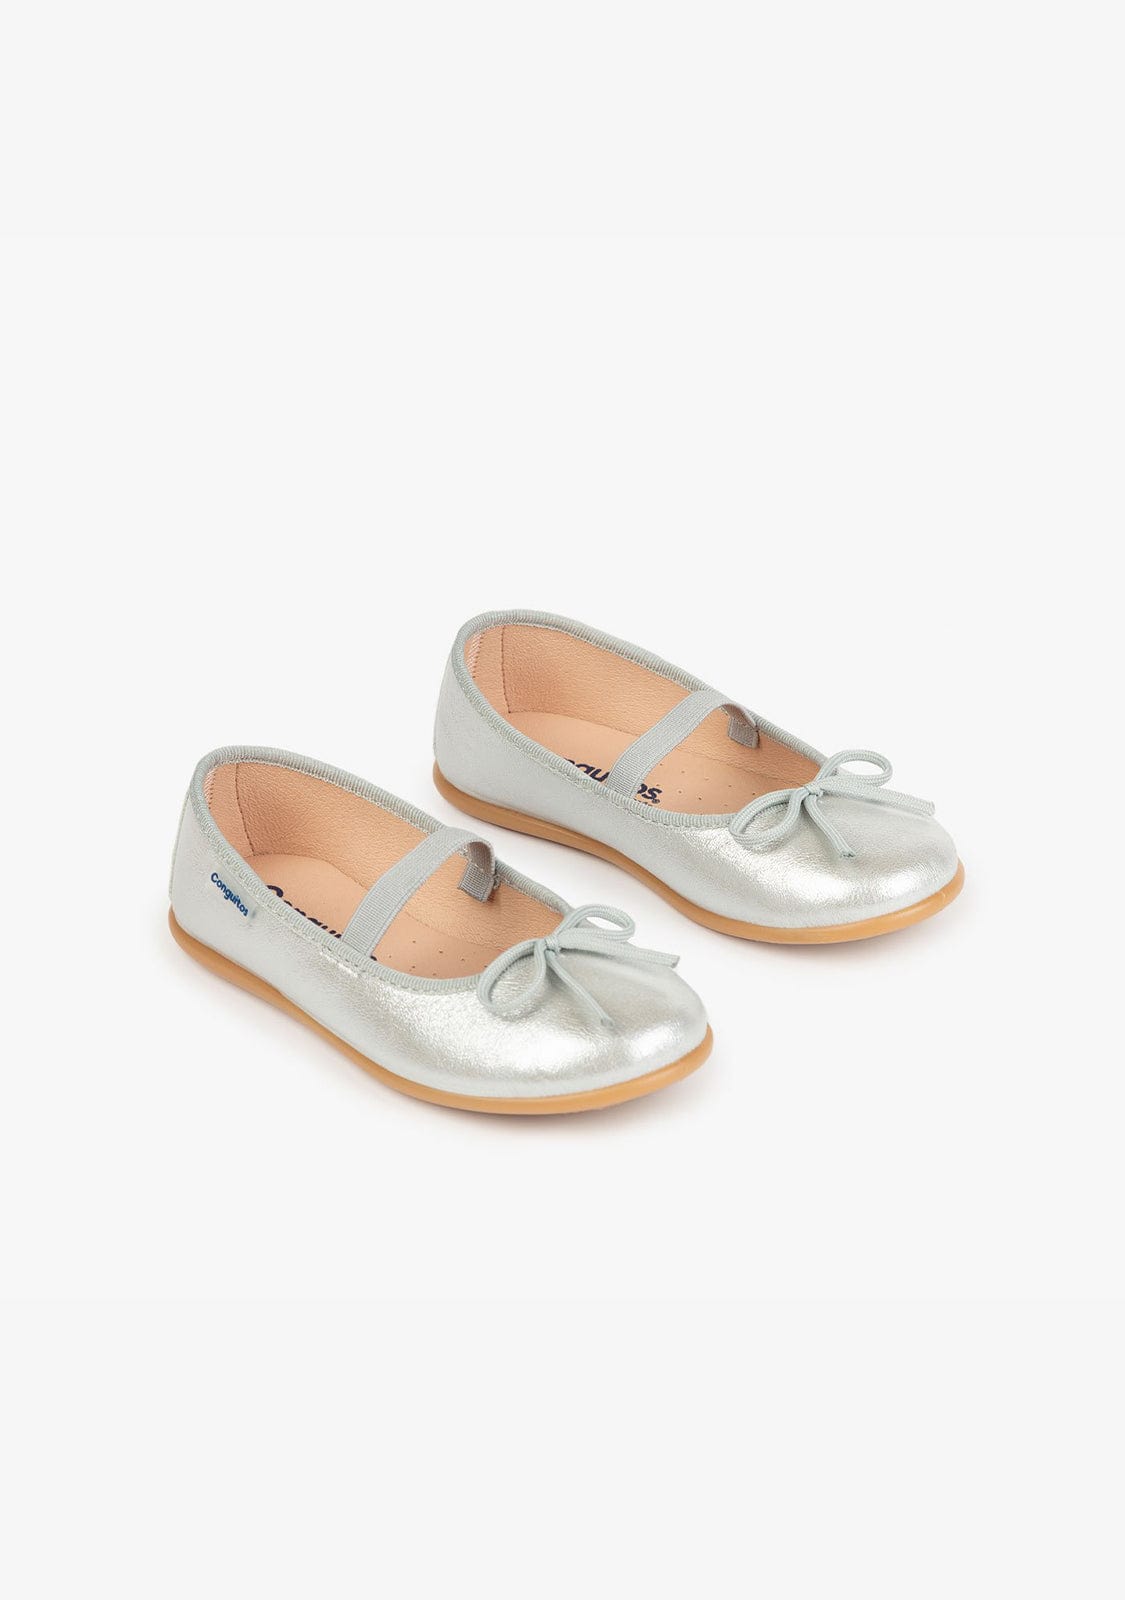 CONGUITOS Shoes Girl’s Metalic Silver Basic Ballerinas